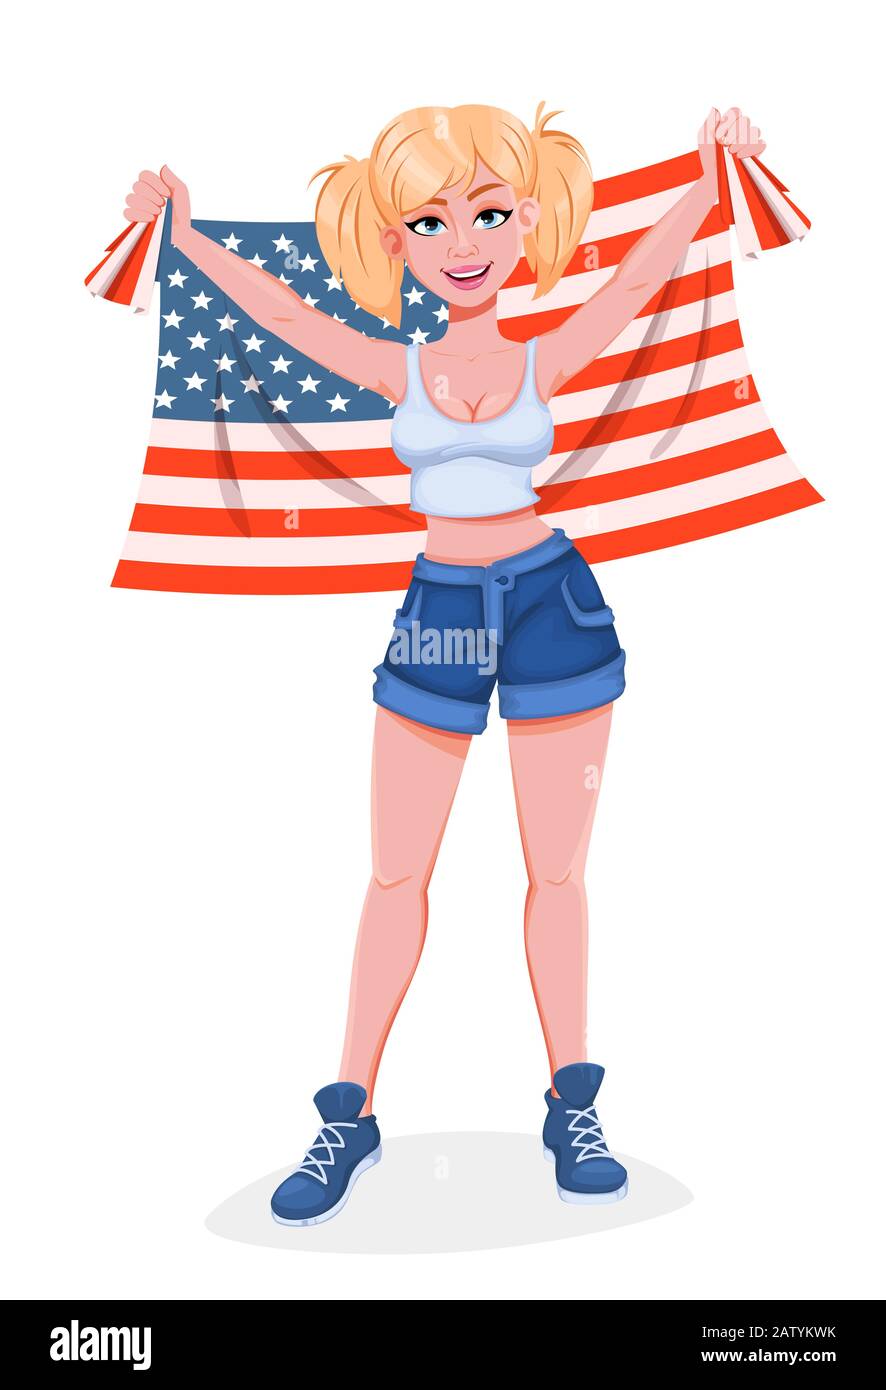 Glücklicher Tag des Präsidenten. Schöne Cartoon-Figur für Mädchen, die die Flagge der USA hält. Vektor-Darstellung auf weißem Hintergrund Stock Vektor